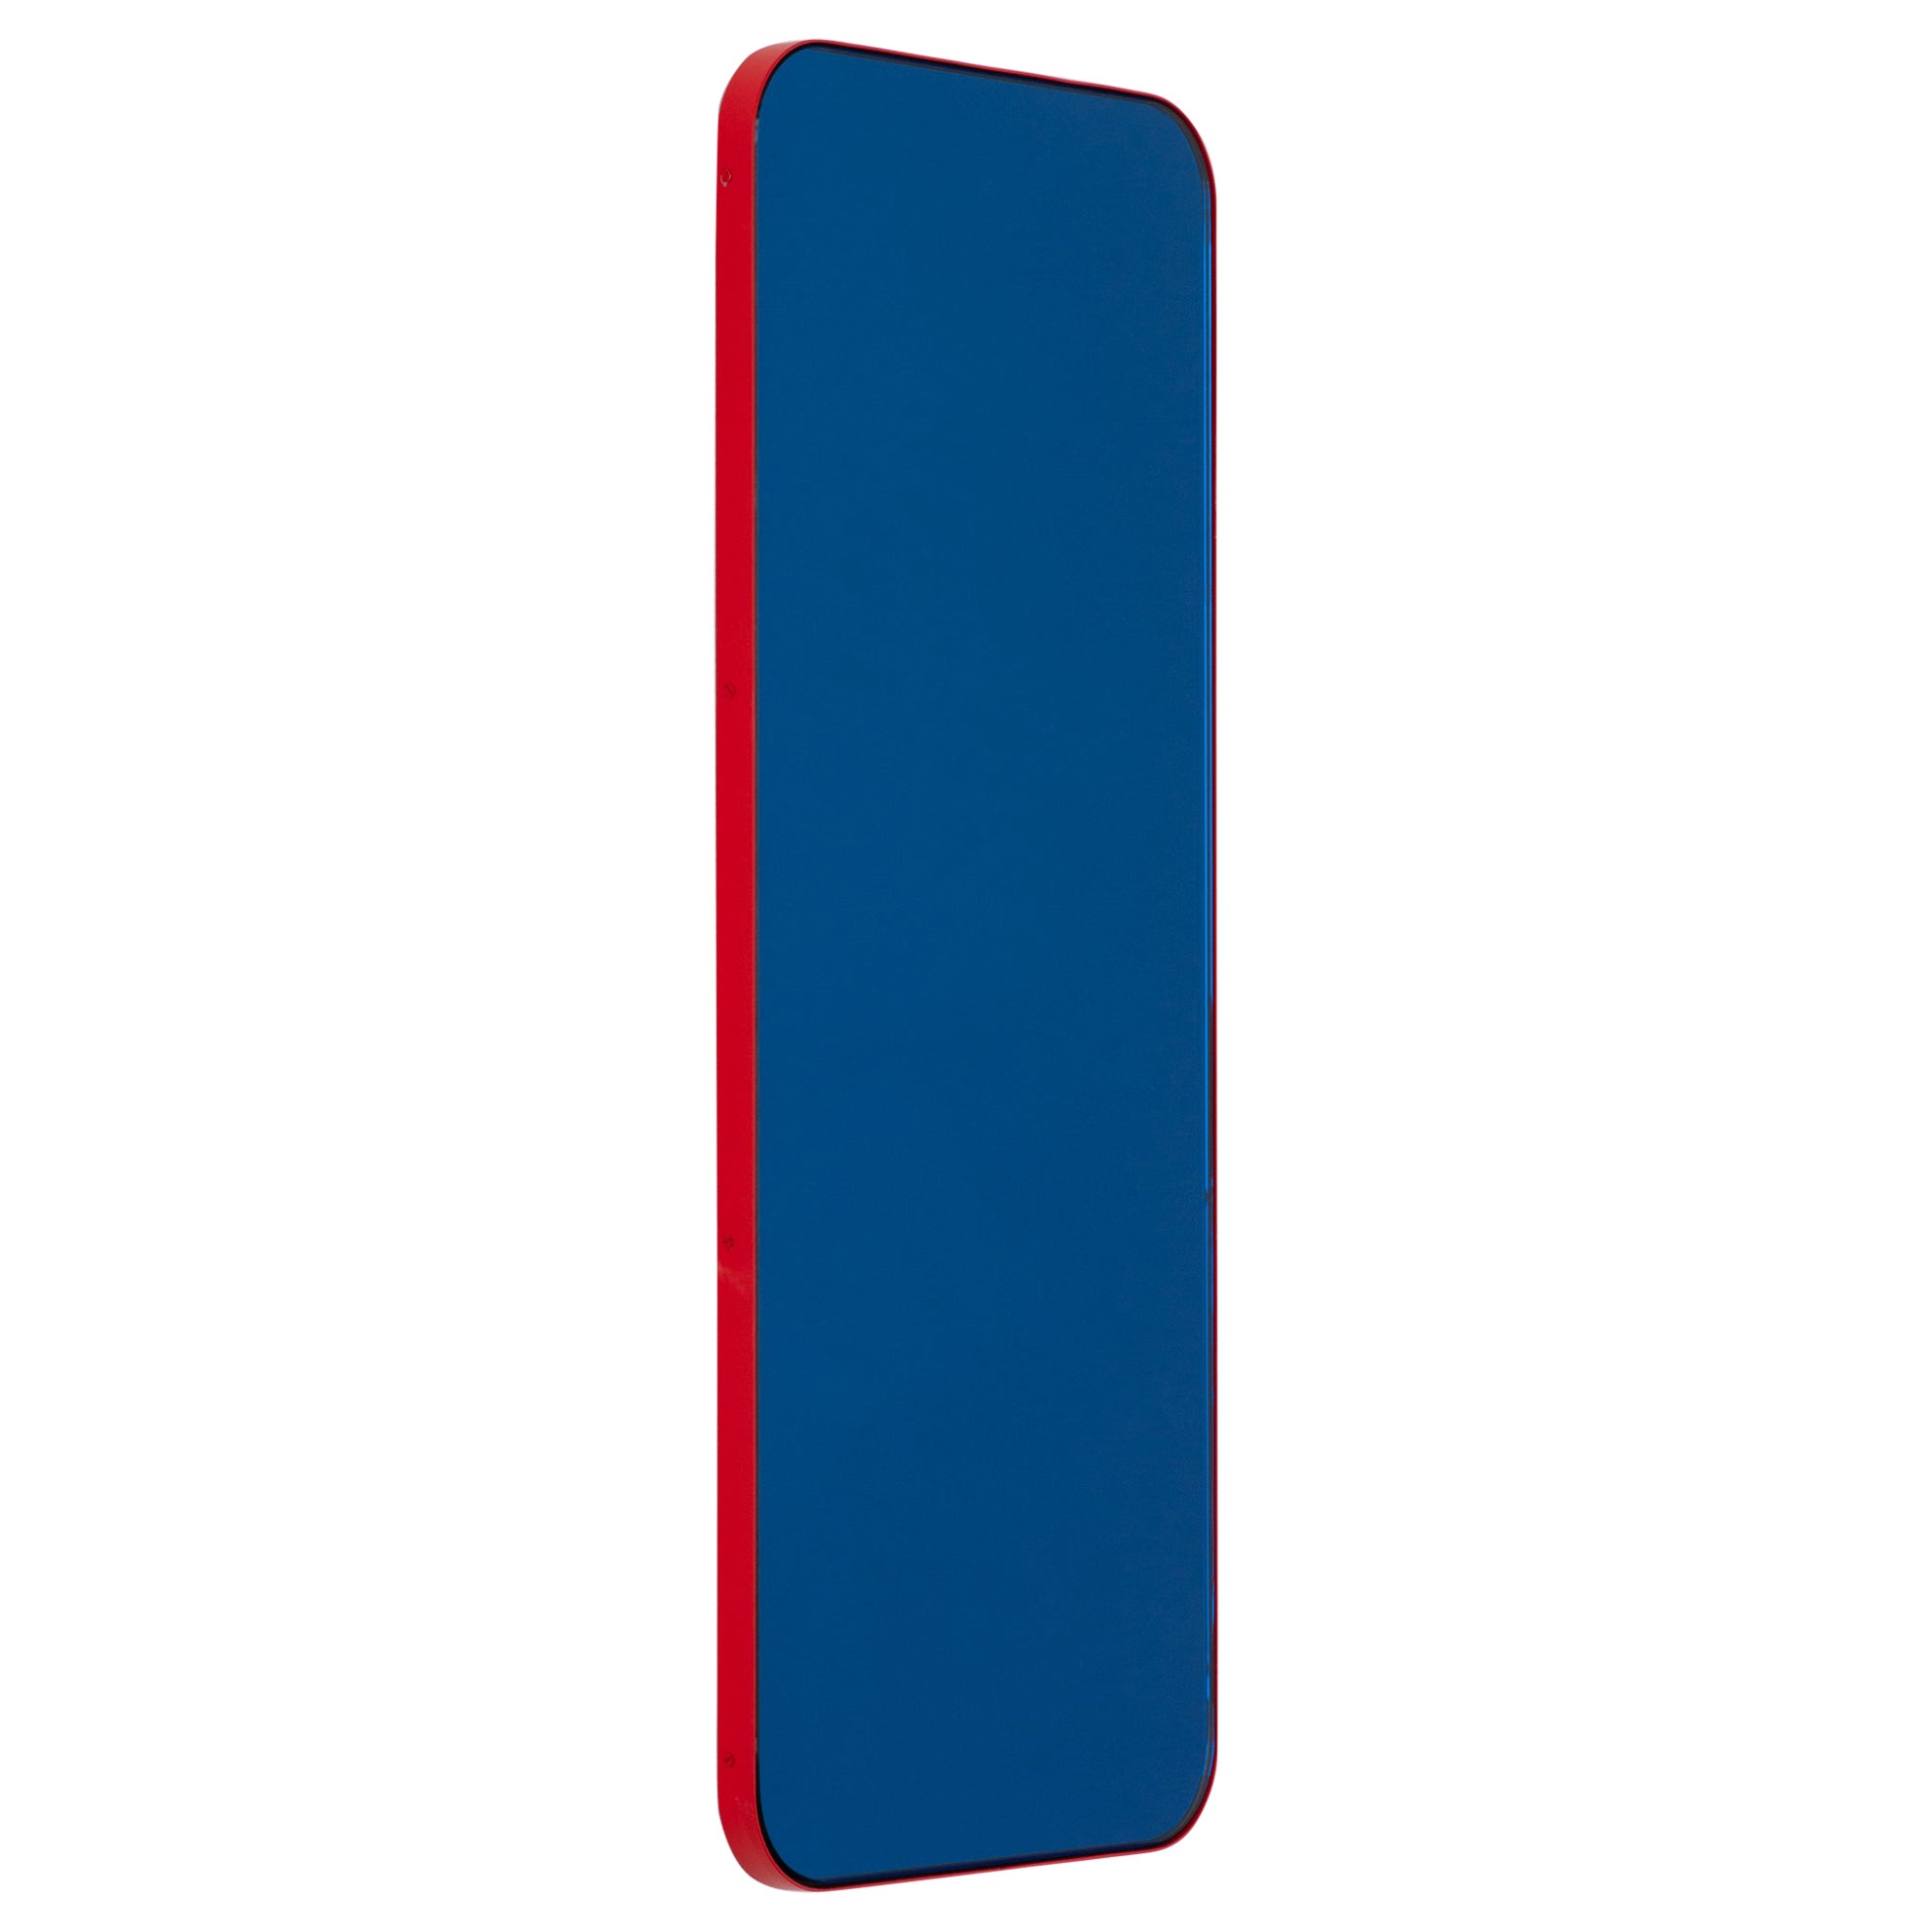 Quadris Rectangular Contemporary Blue Mirror with a Red Frame, XL